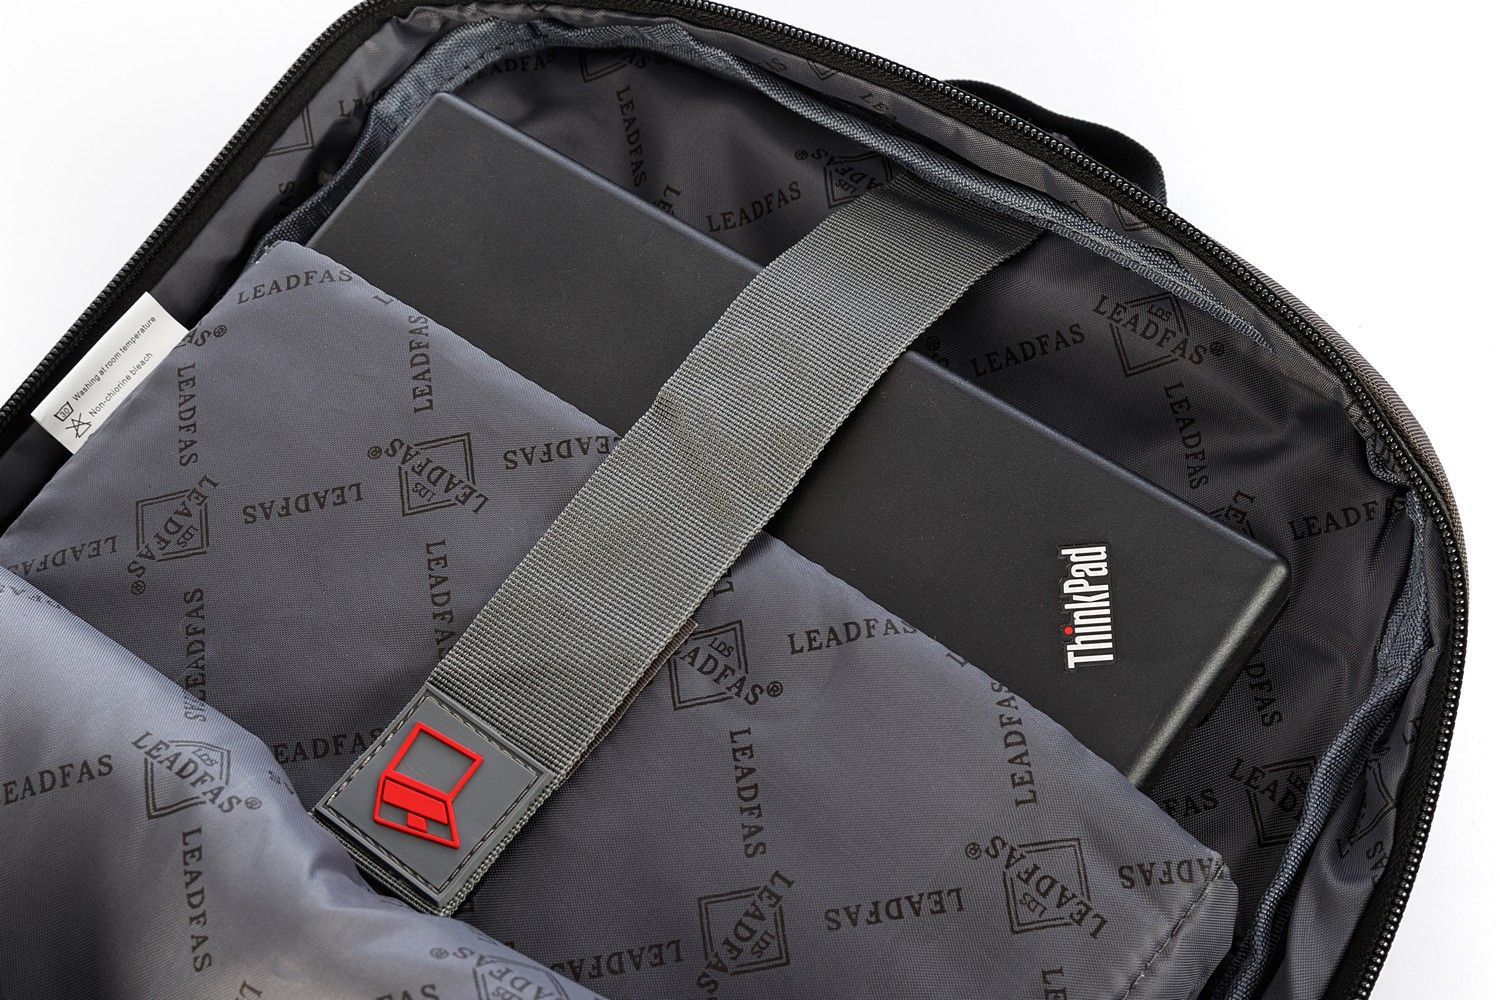 Рюкзак мужской городской, темно-серый, для ноутбука, с USB портом, объем 17л